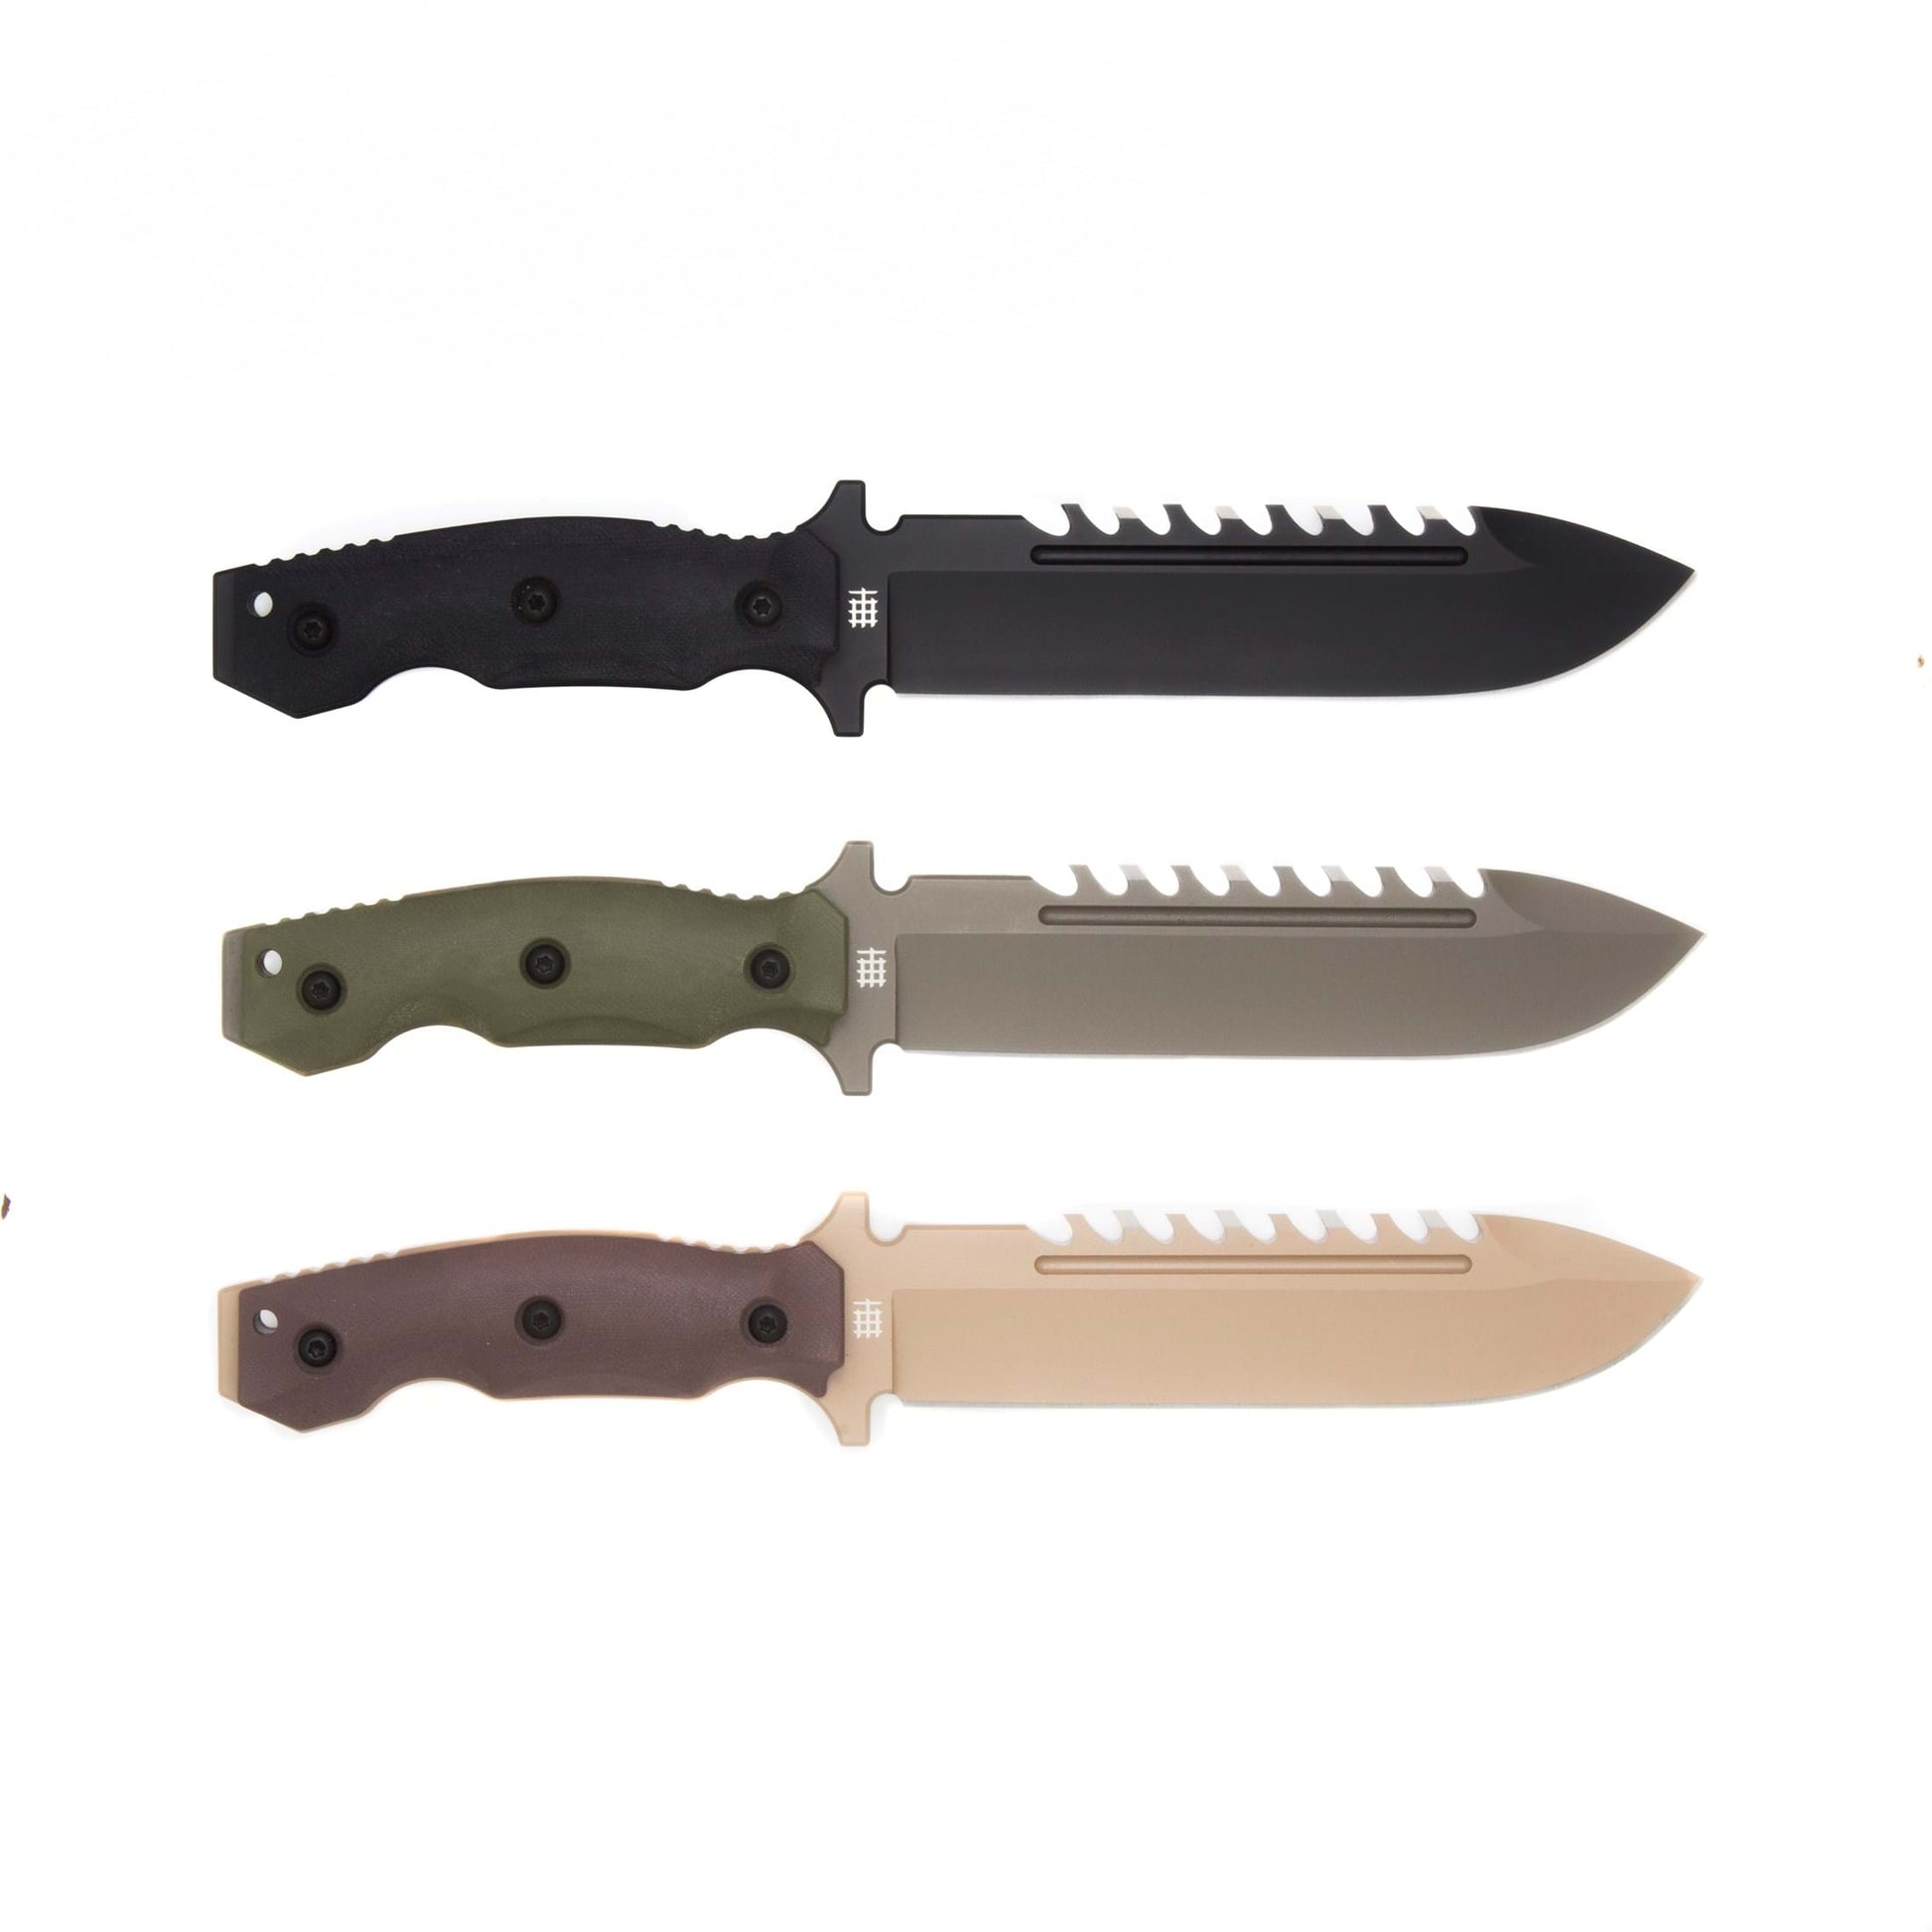 Halfbreed Blades LSK-01 OD Green Large Survival Knife 3